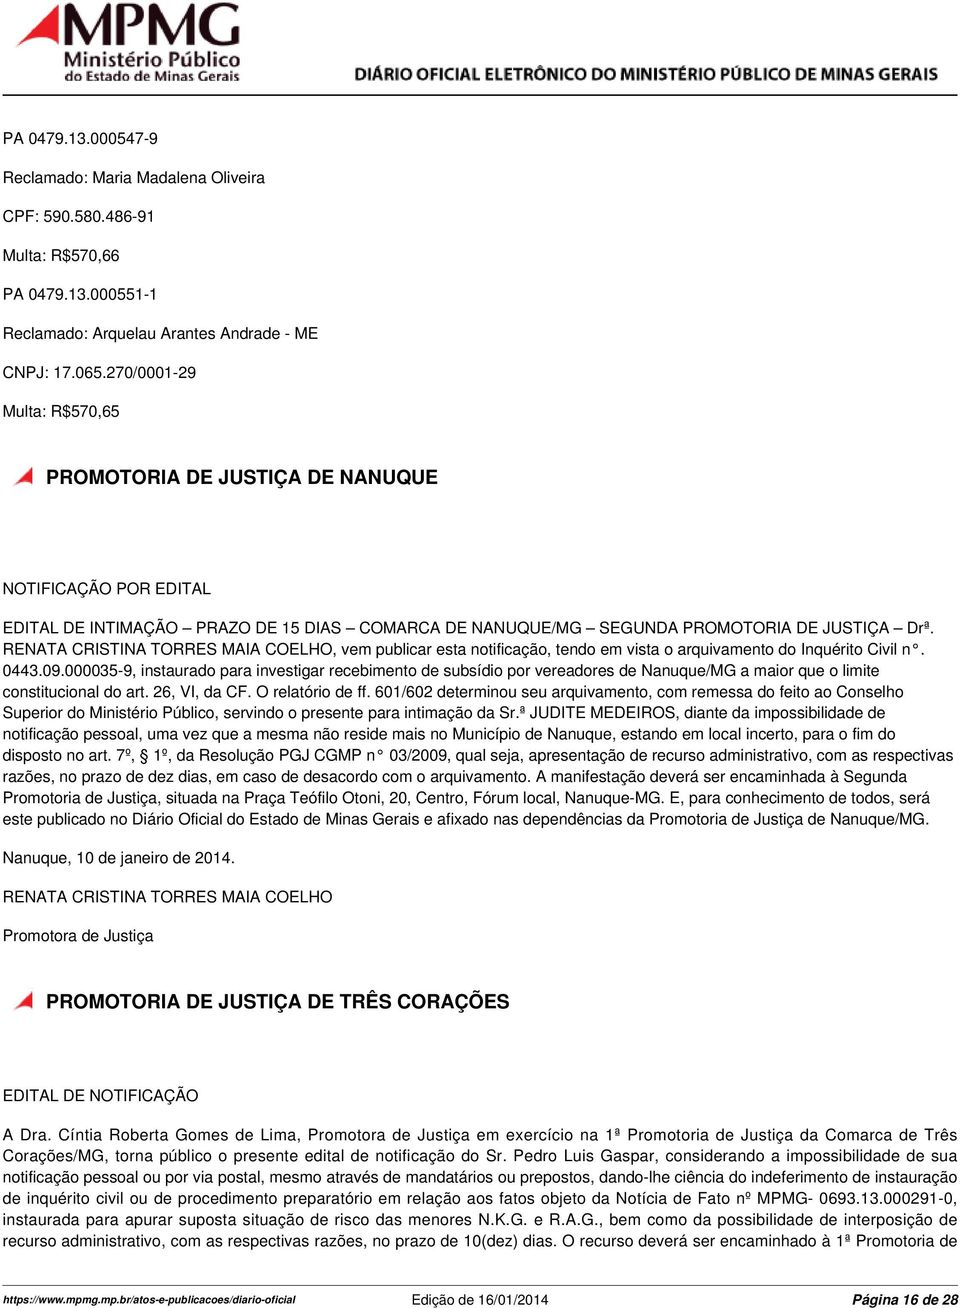 RENATA CRISTINA TORRES MAIA COELHO, vem publicar esta notificação, tendo em vista o arquivamento do Inquérito Civil n. 0443.09.